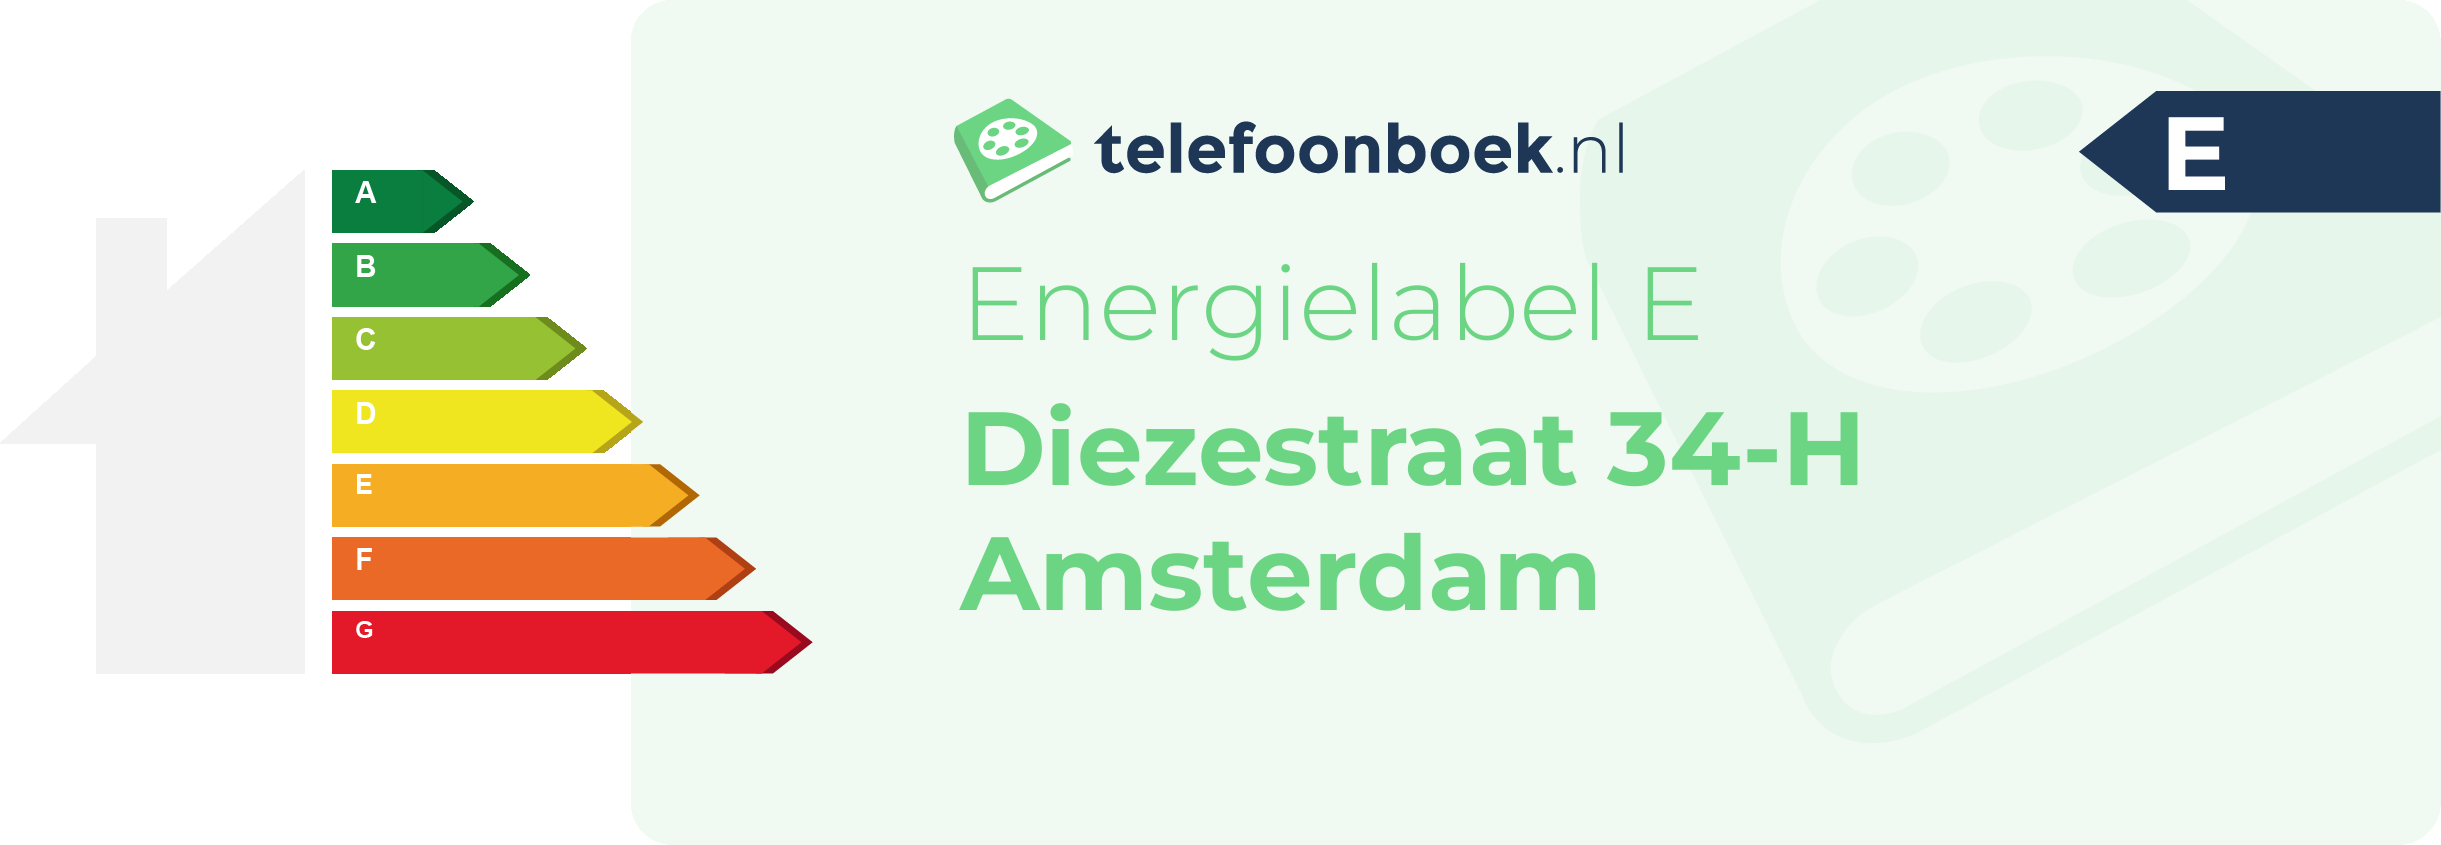 Energielabel Diezestraat 34-H Amsterdam